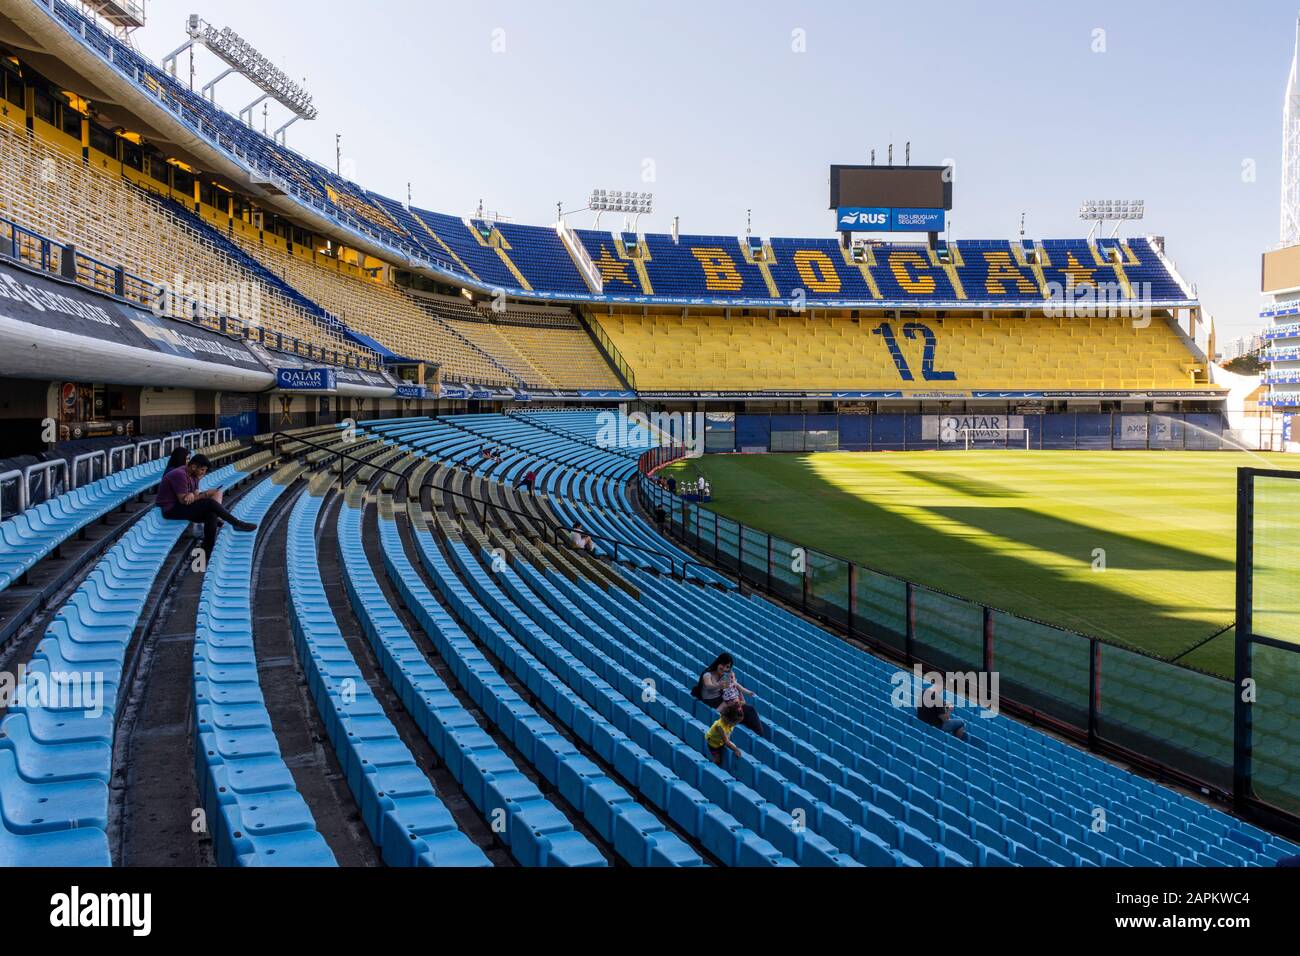 Interior of La Bombonera soccer stadium (Boca Juniors) in La Boca area, Buenos Aires, Argentina Stock Photo